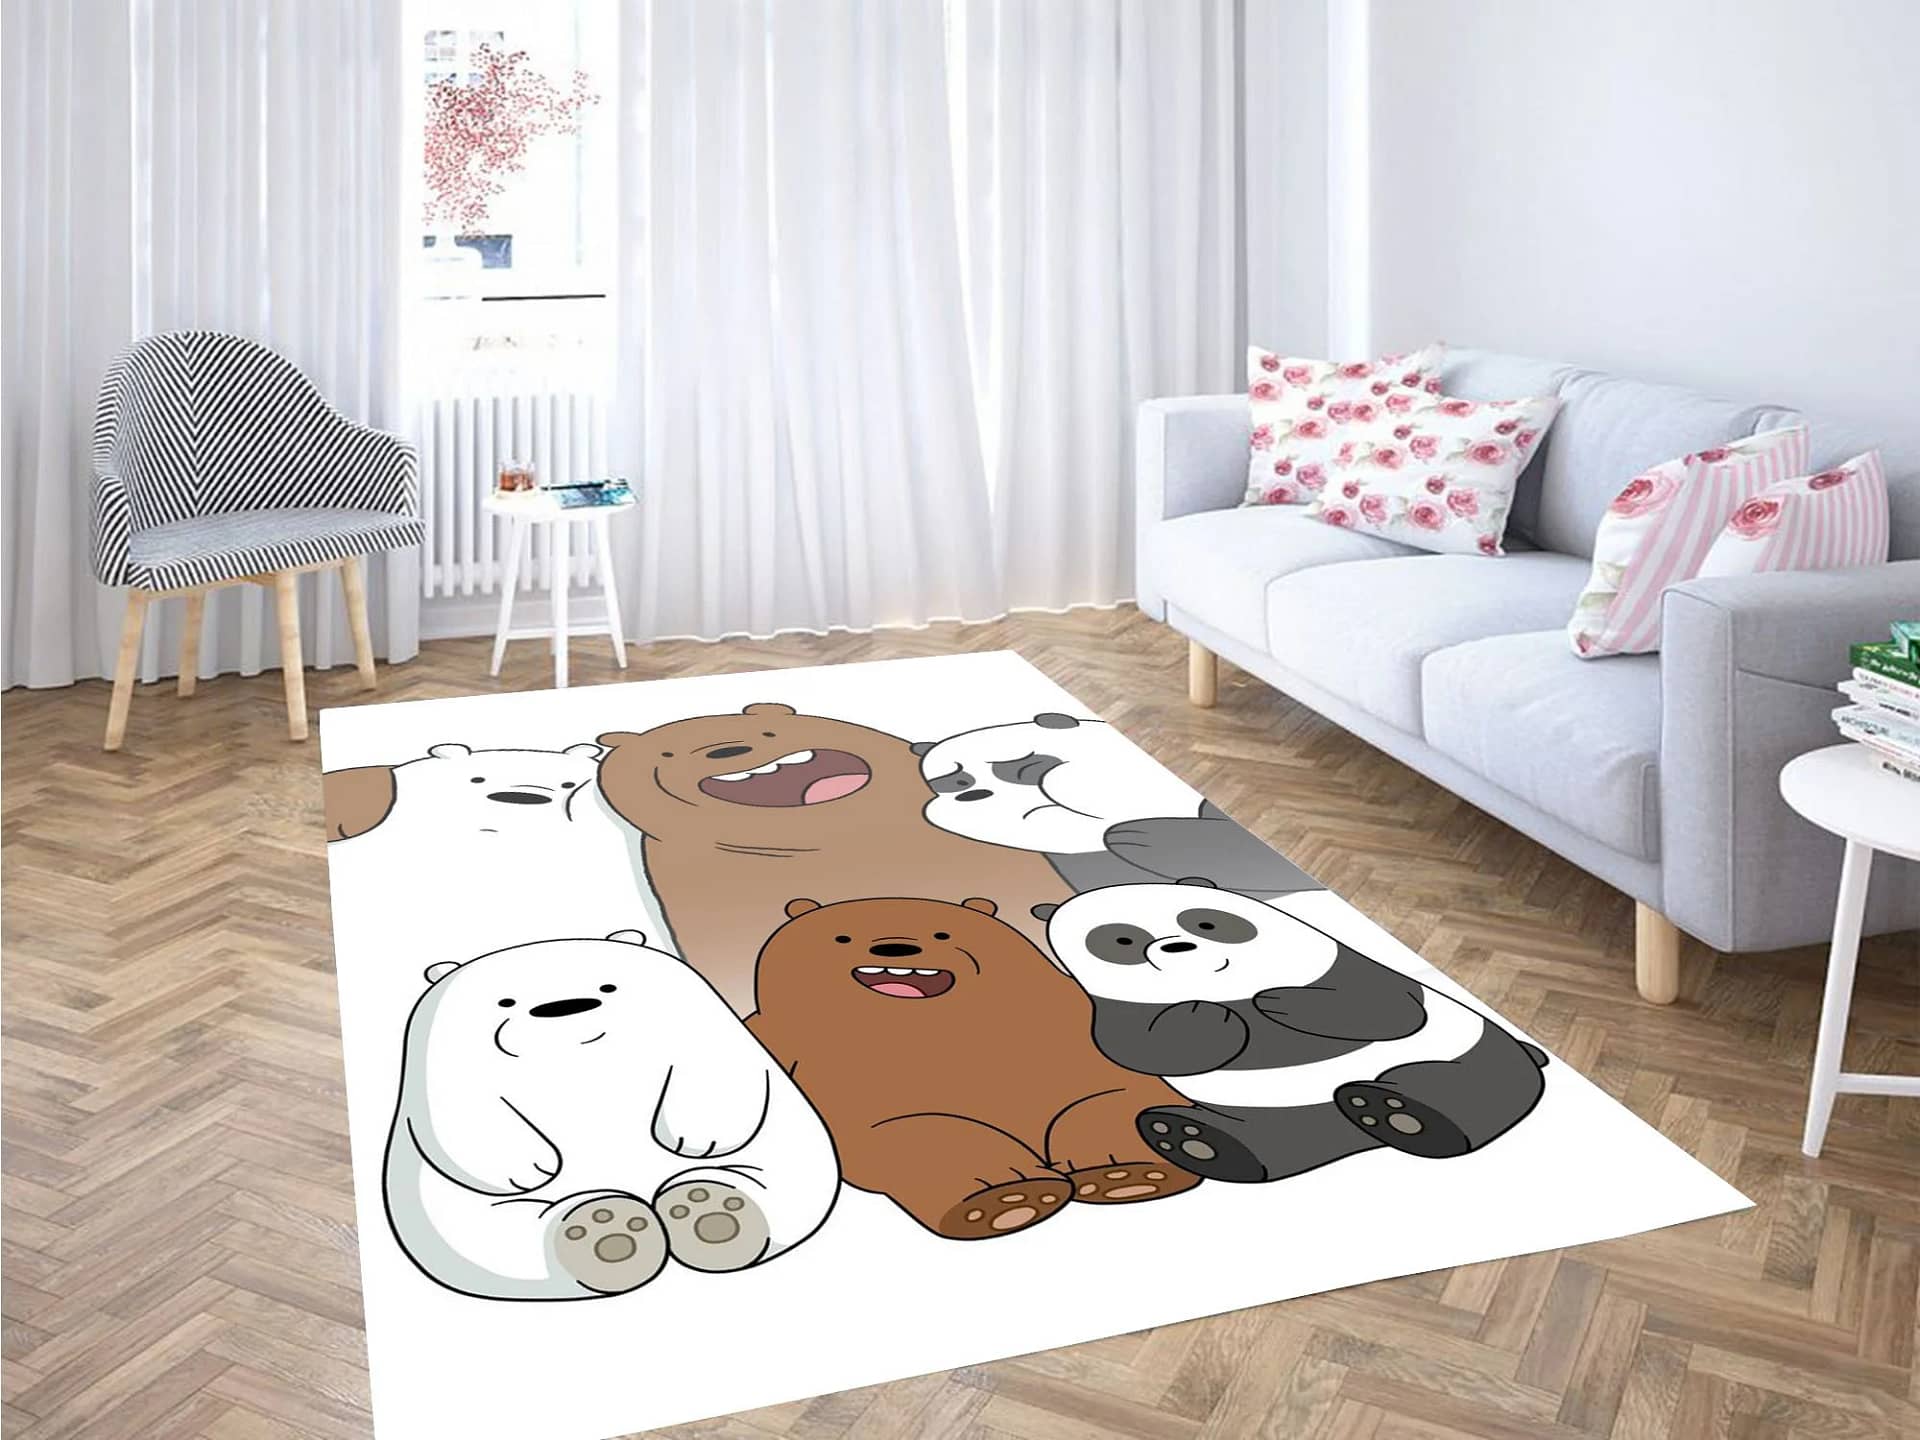 Friendship Of We Bare Bears Carpet Rug